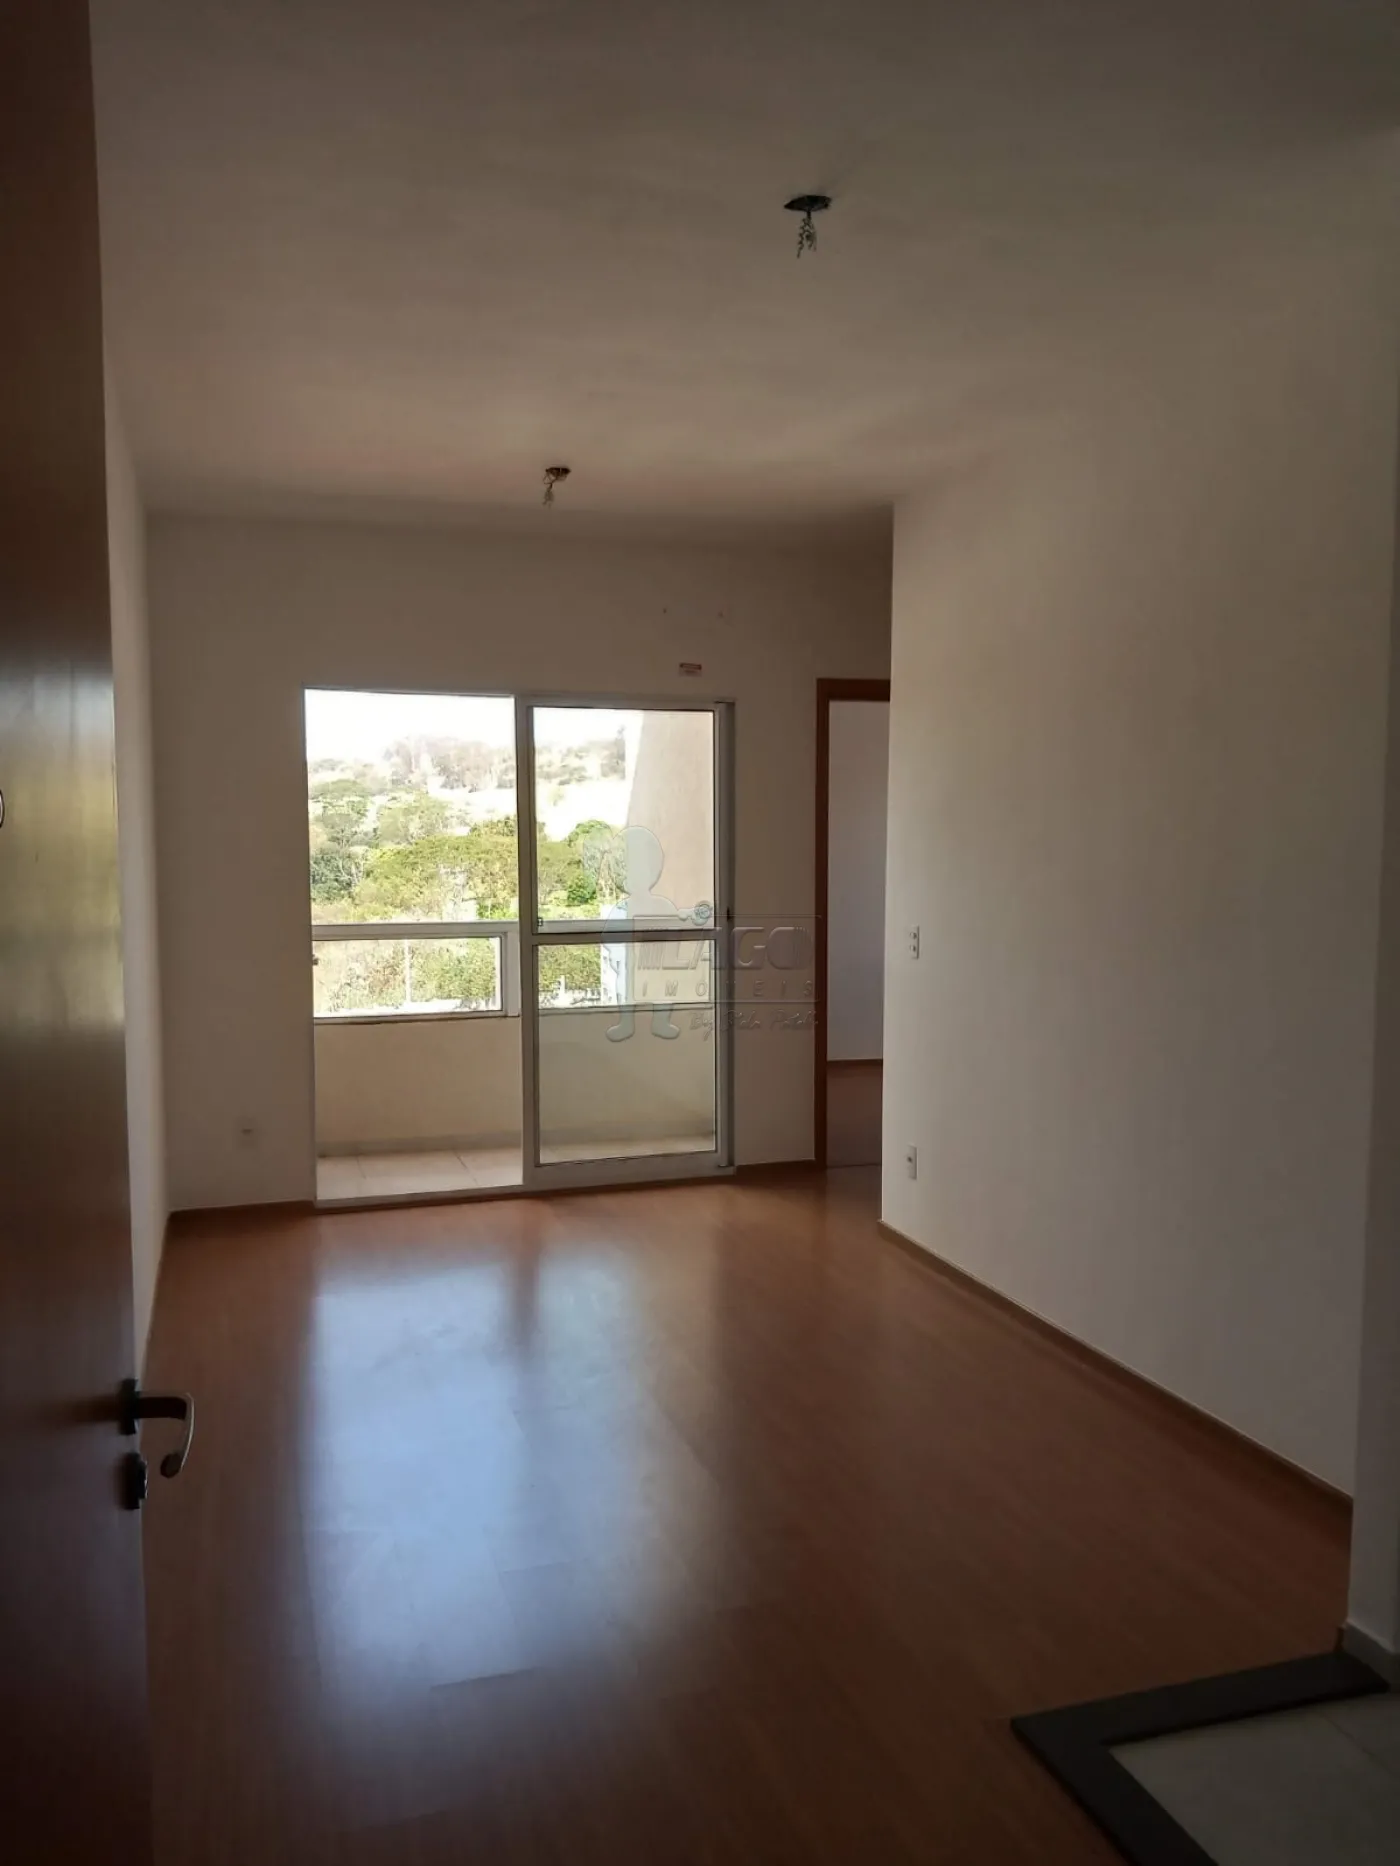 Comprar Apartamento / Padrão em Ribeirão Preto R$ 300.000,00 - Foto 7